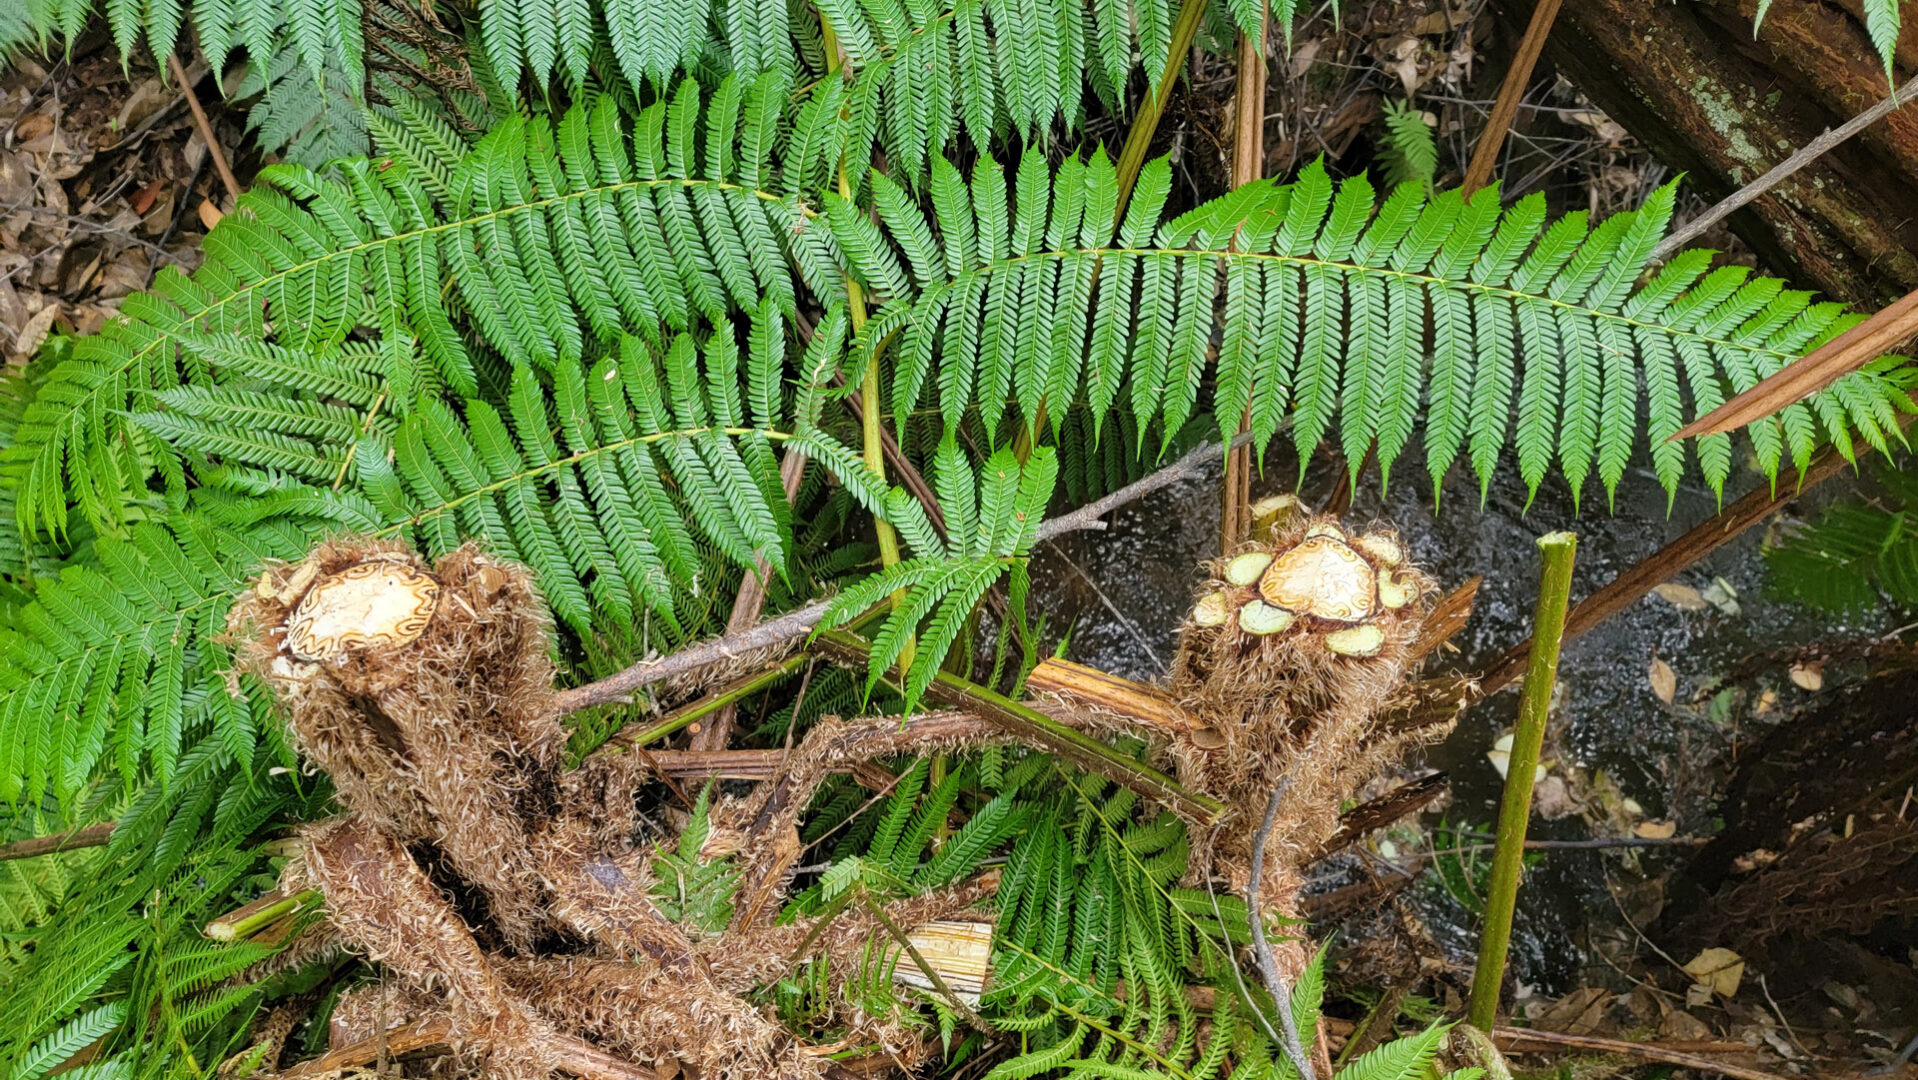 Dead Australian Tree Ferns